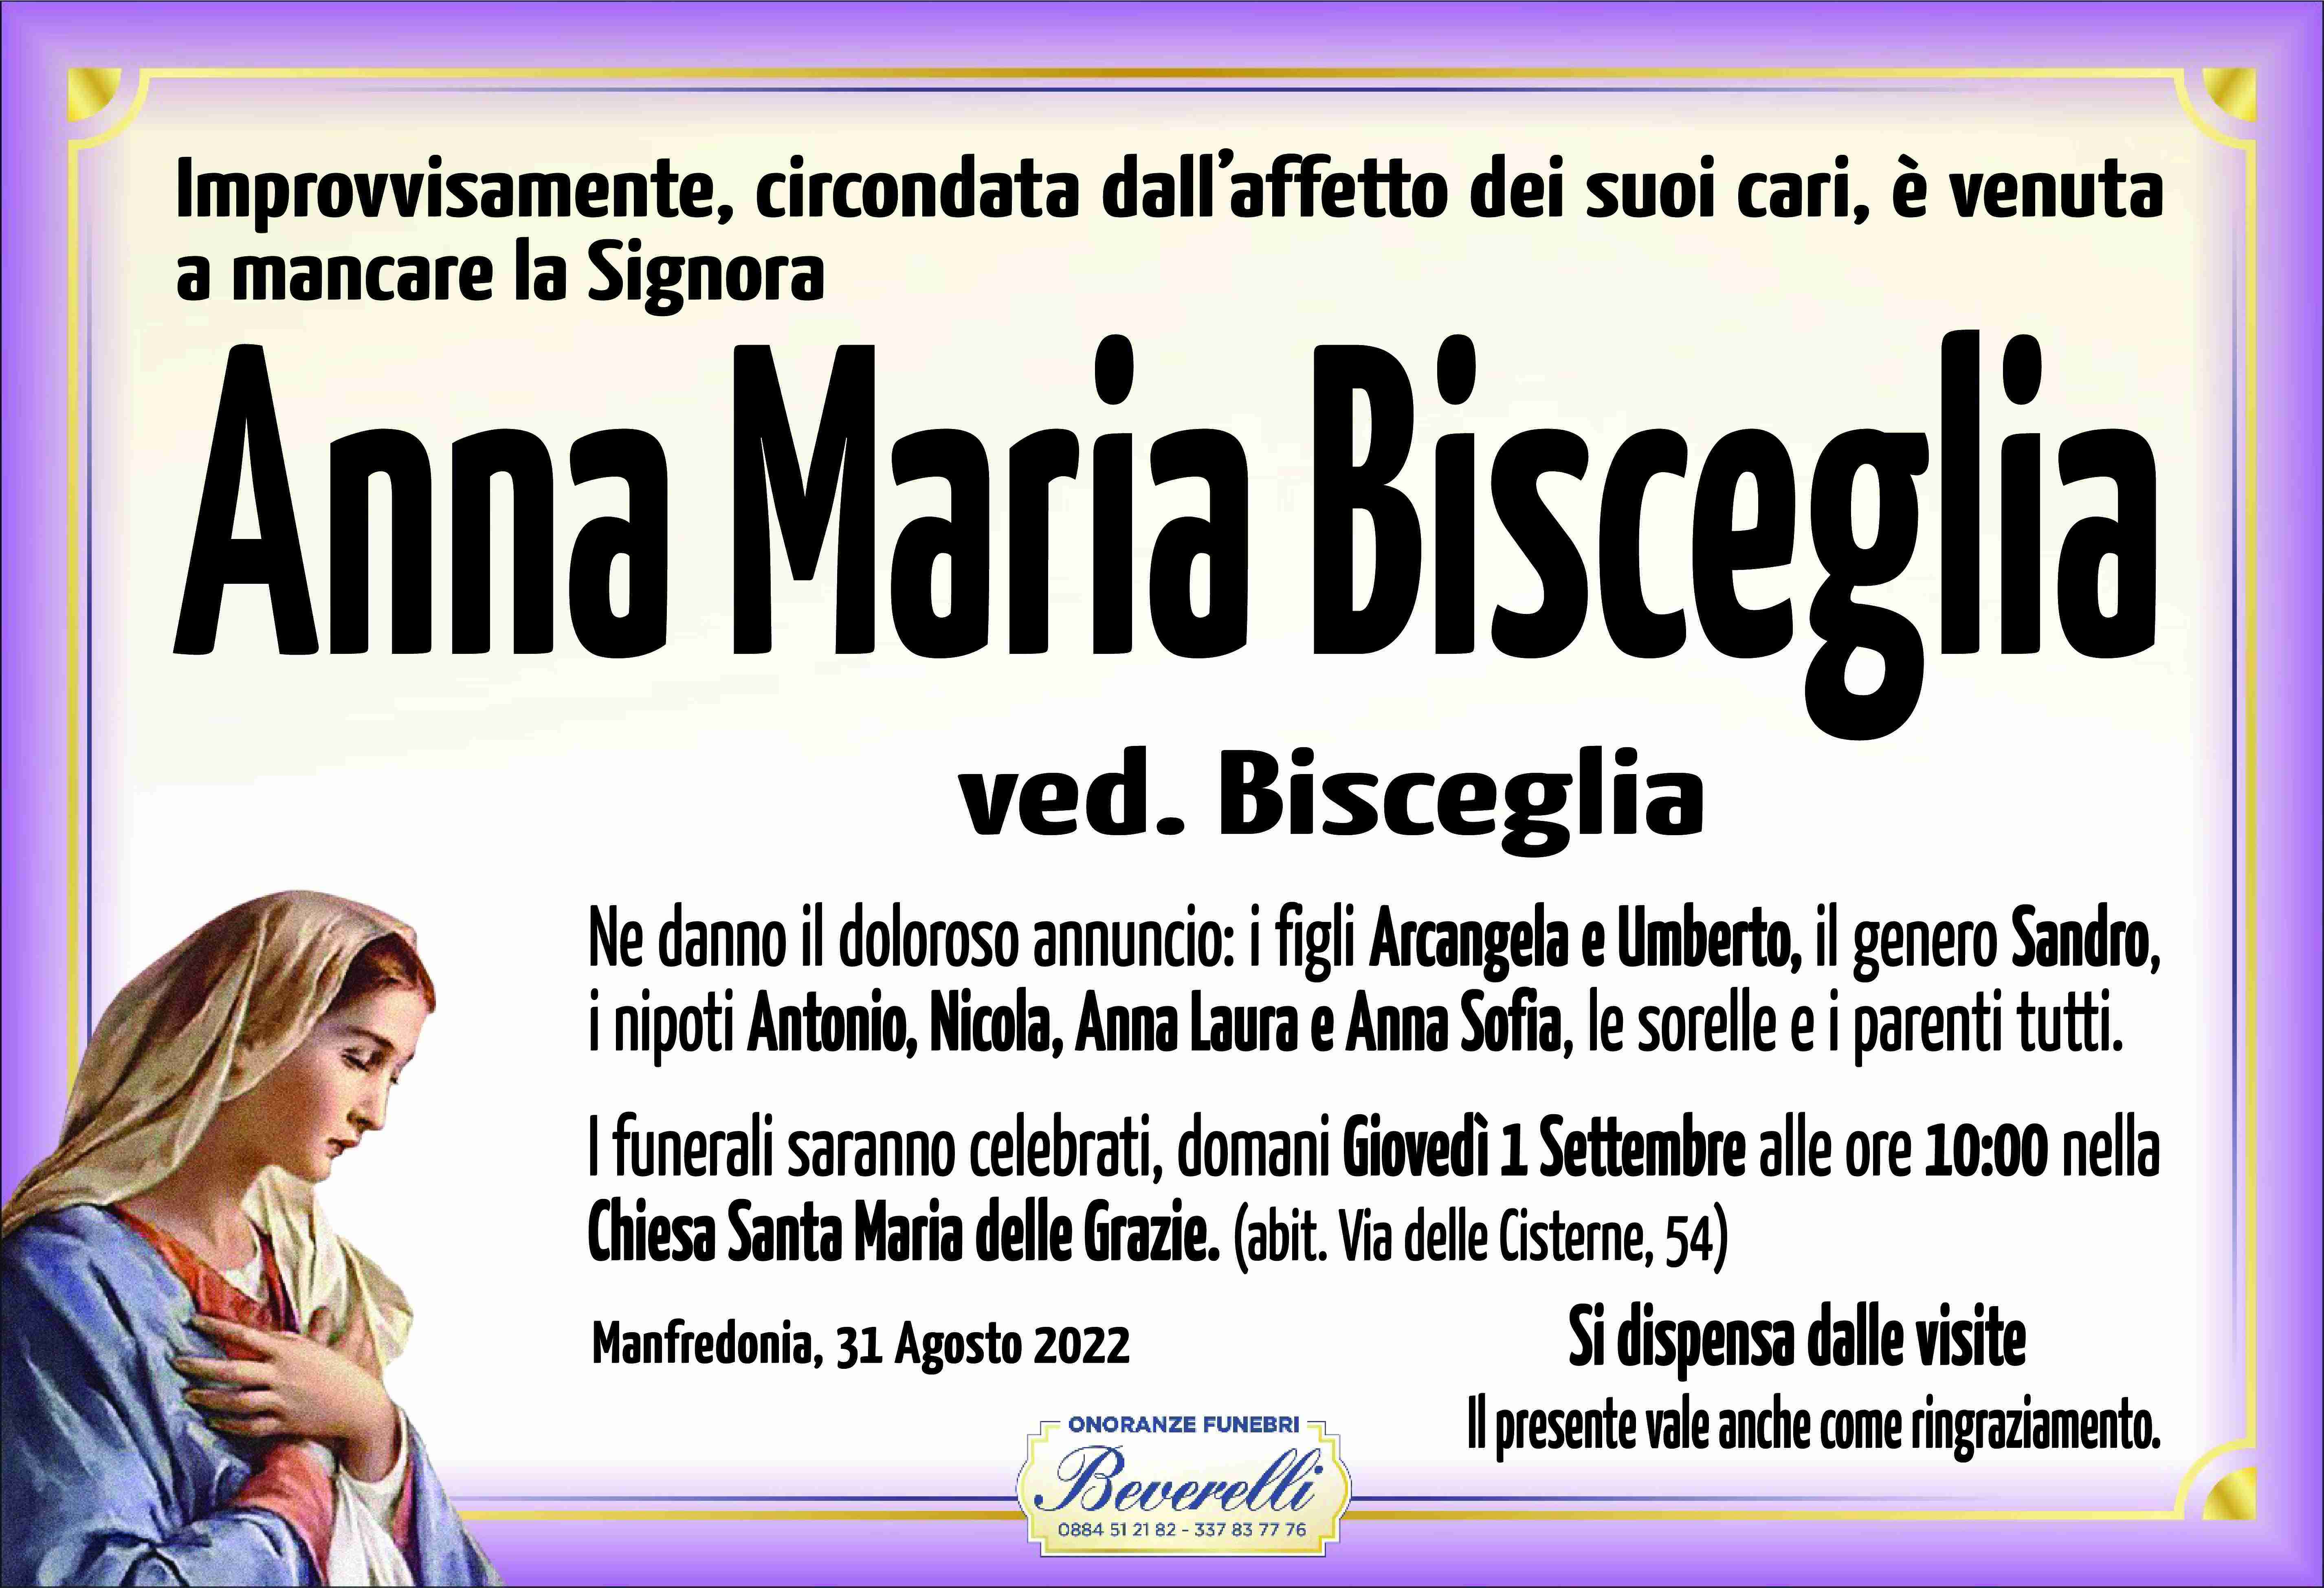 Anna Maria Bisceglia